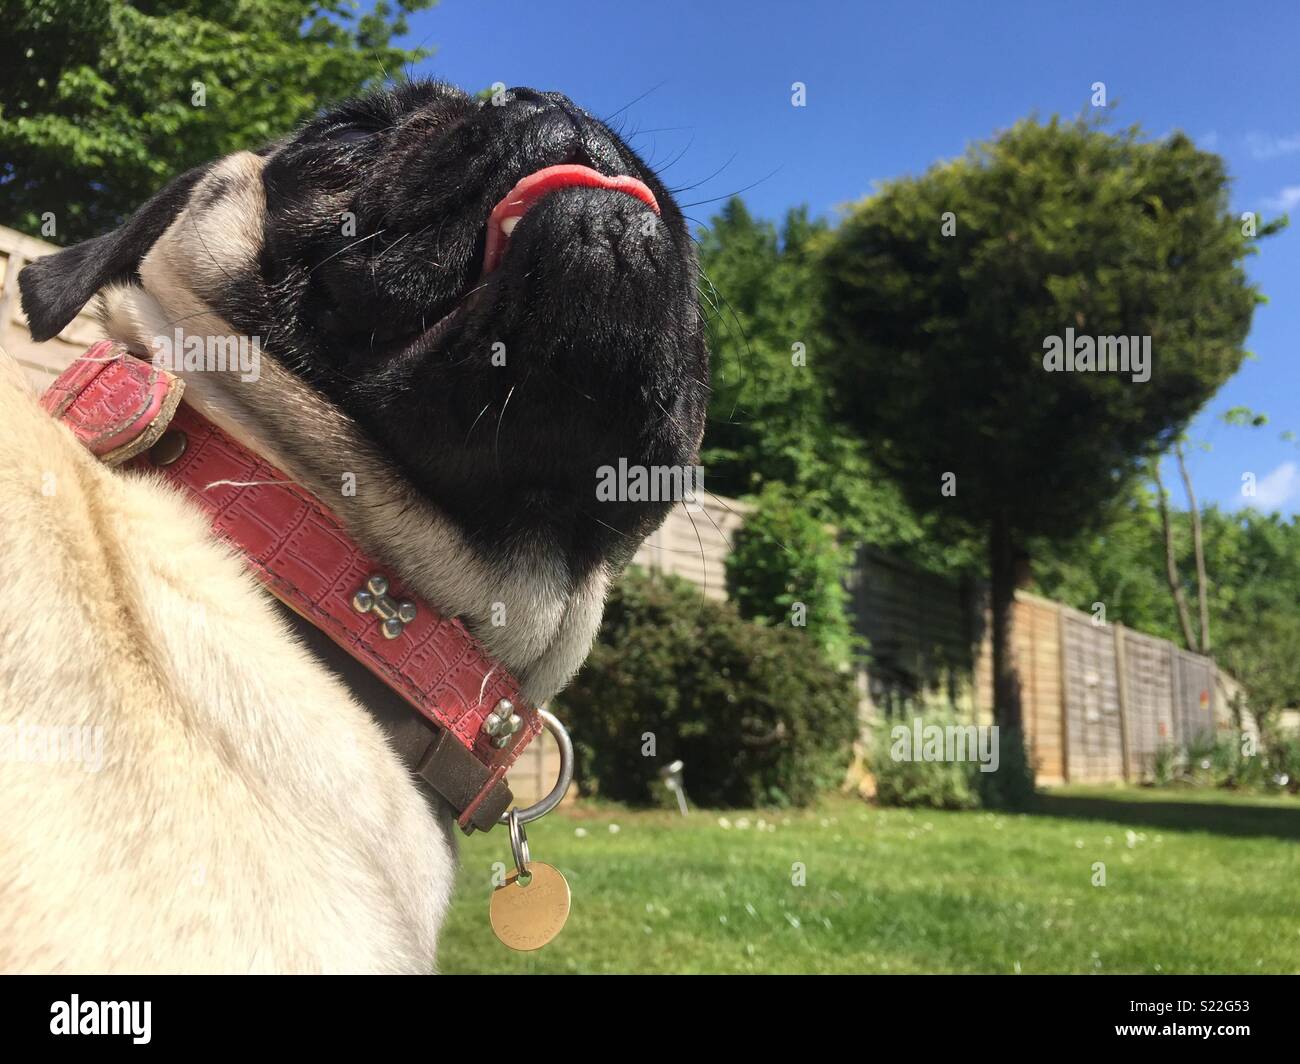 Pug fun in sun Stock Photo